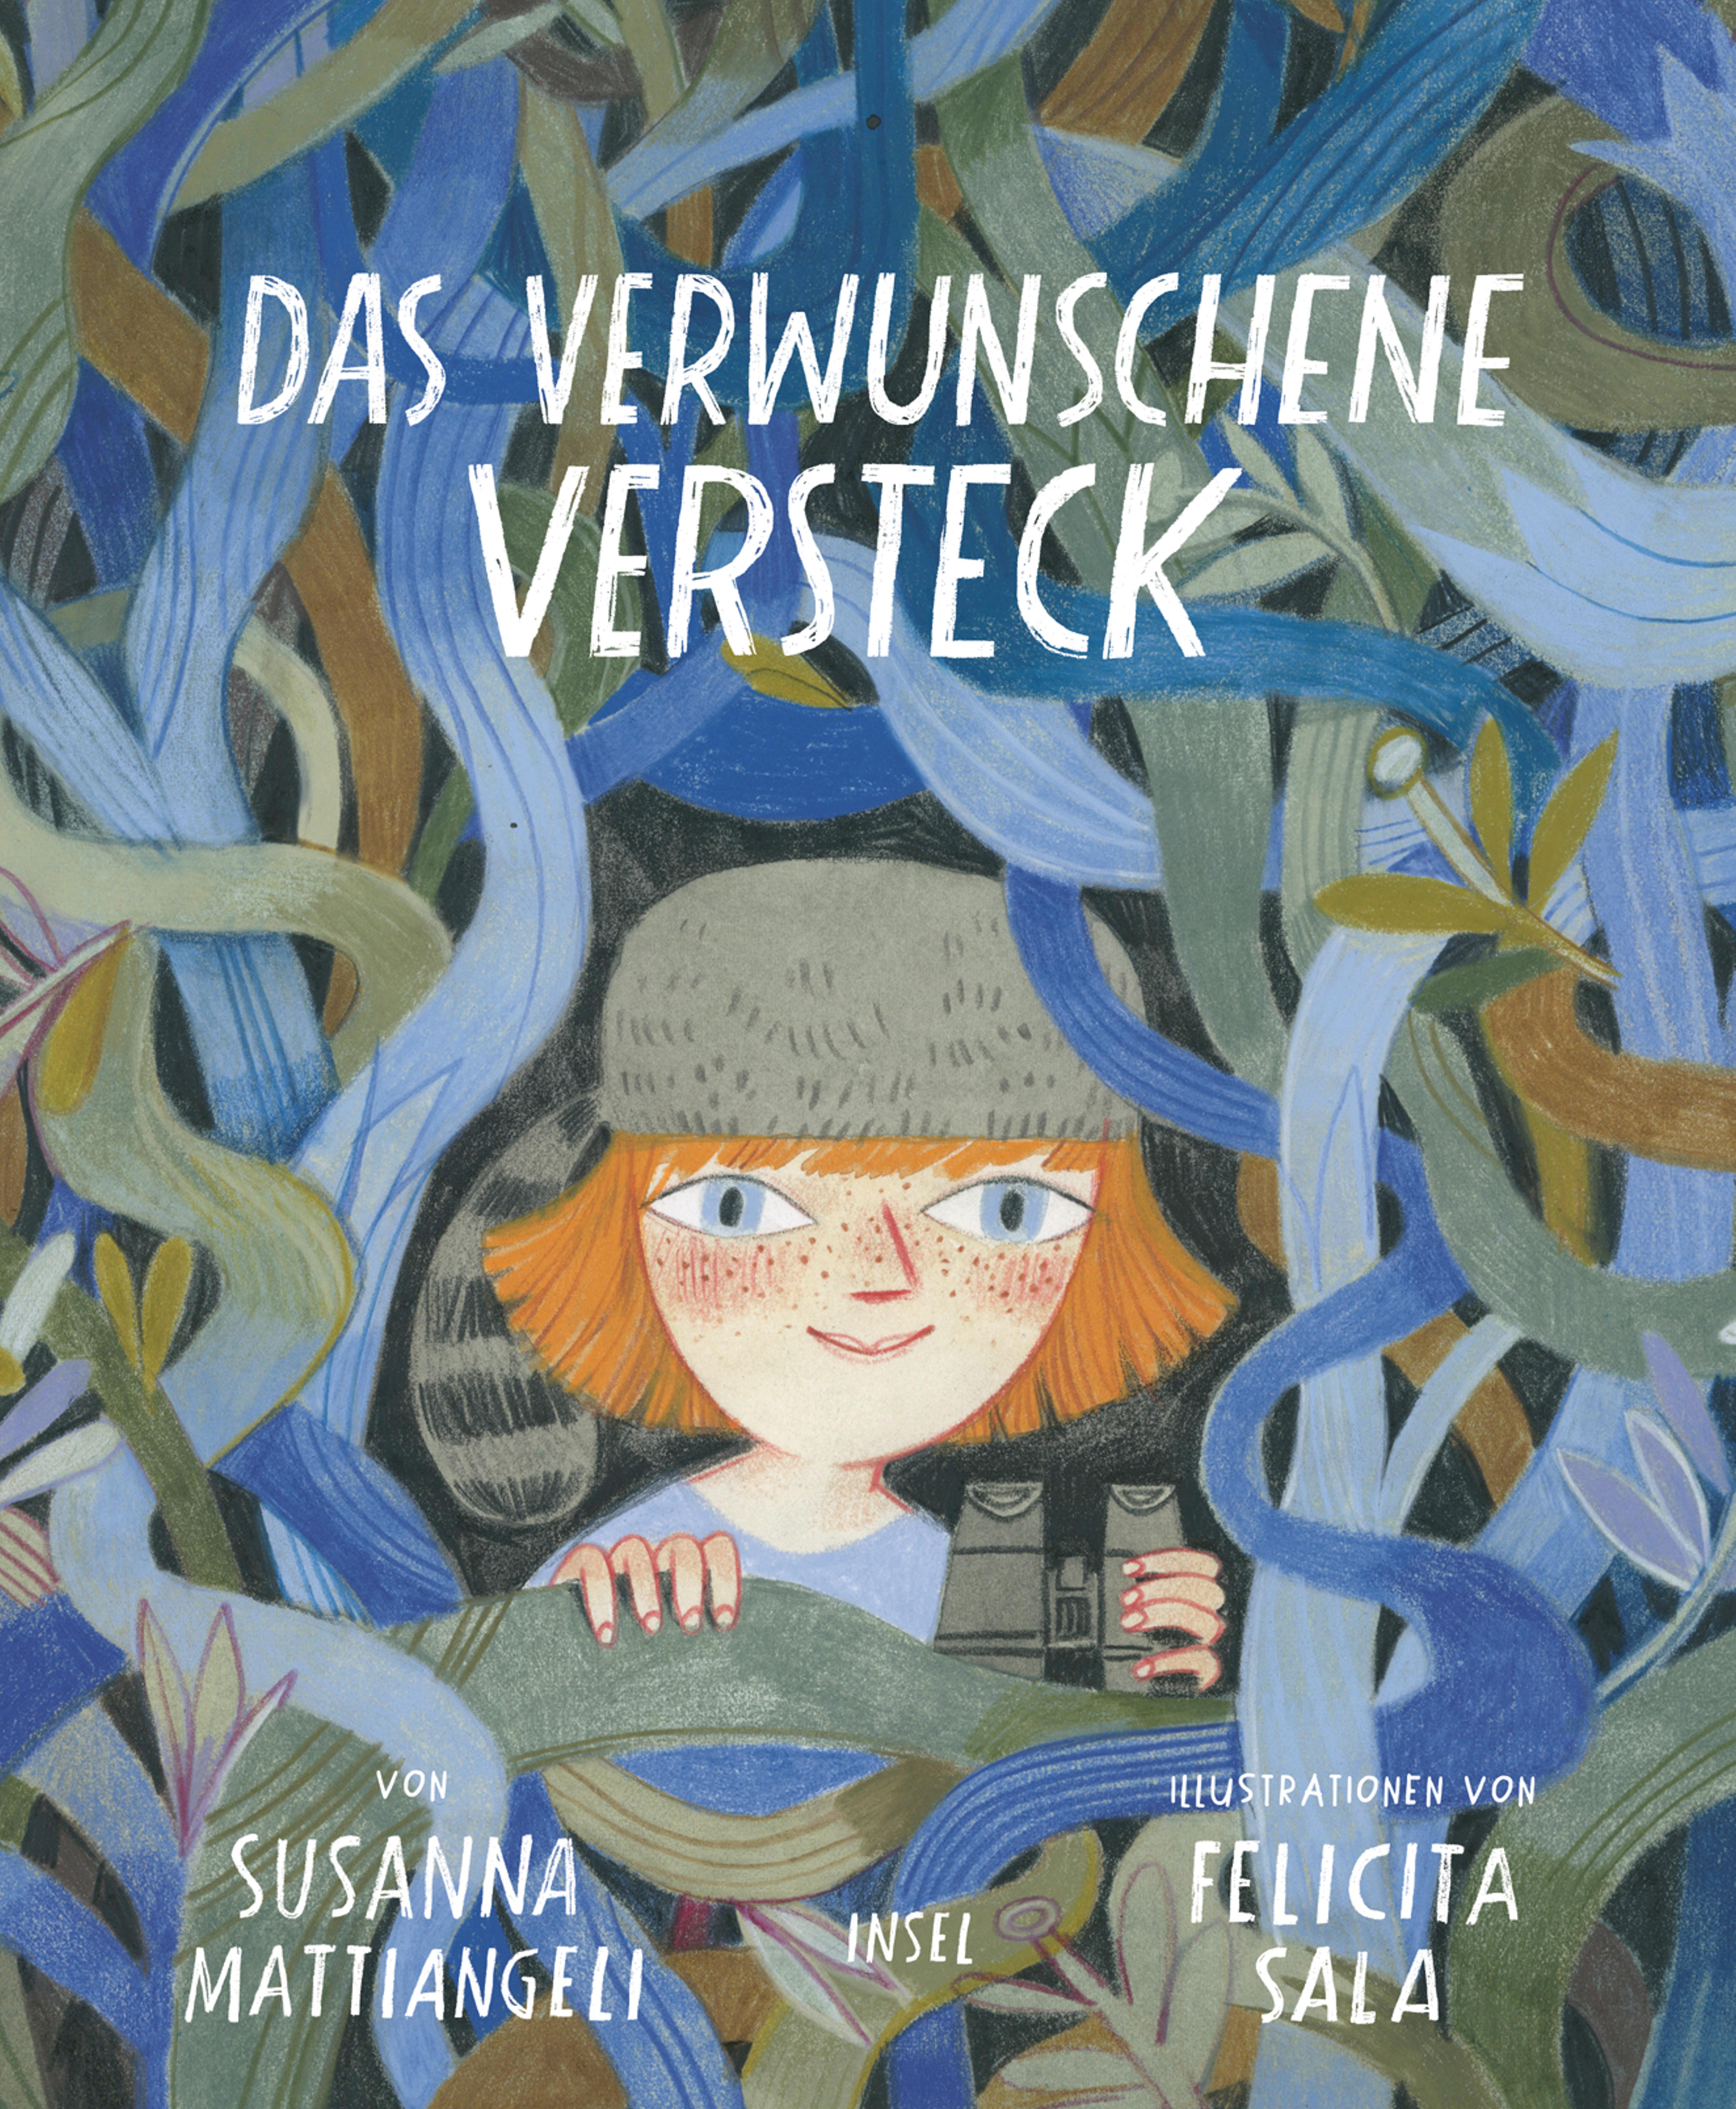 Das verwunschene Versteck. Buch von Susanna Mattiangeli (Insel Verlag)